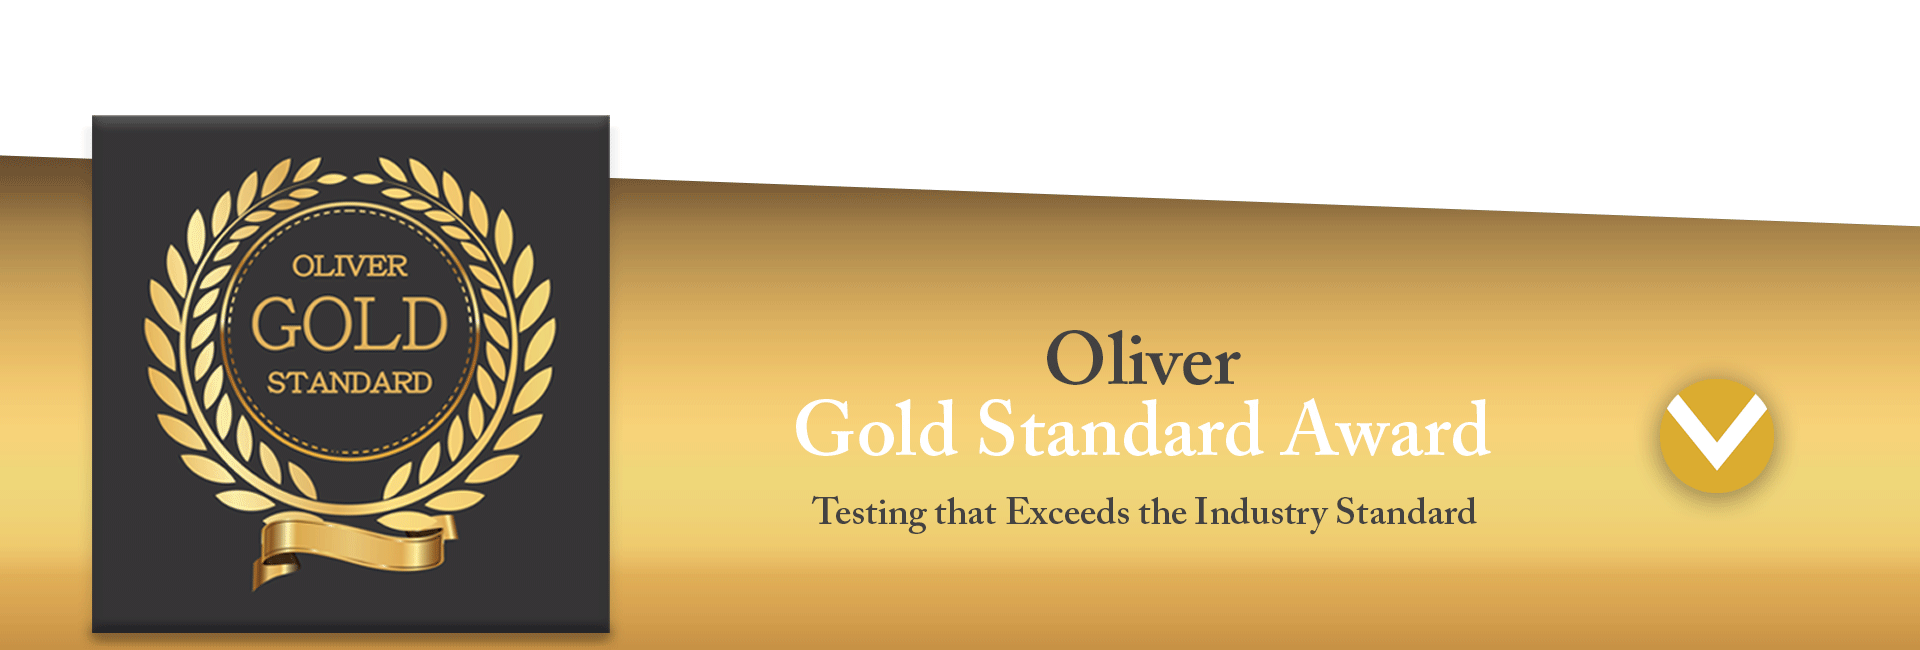 oliver-gold-standard